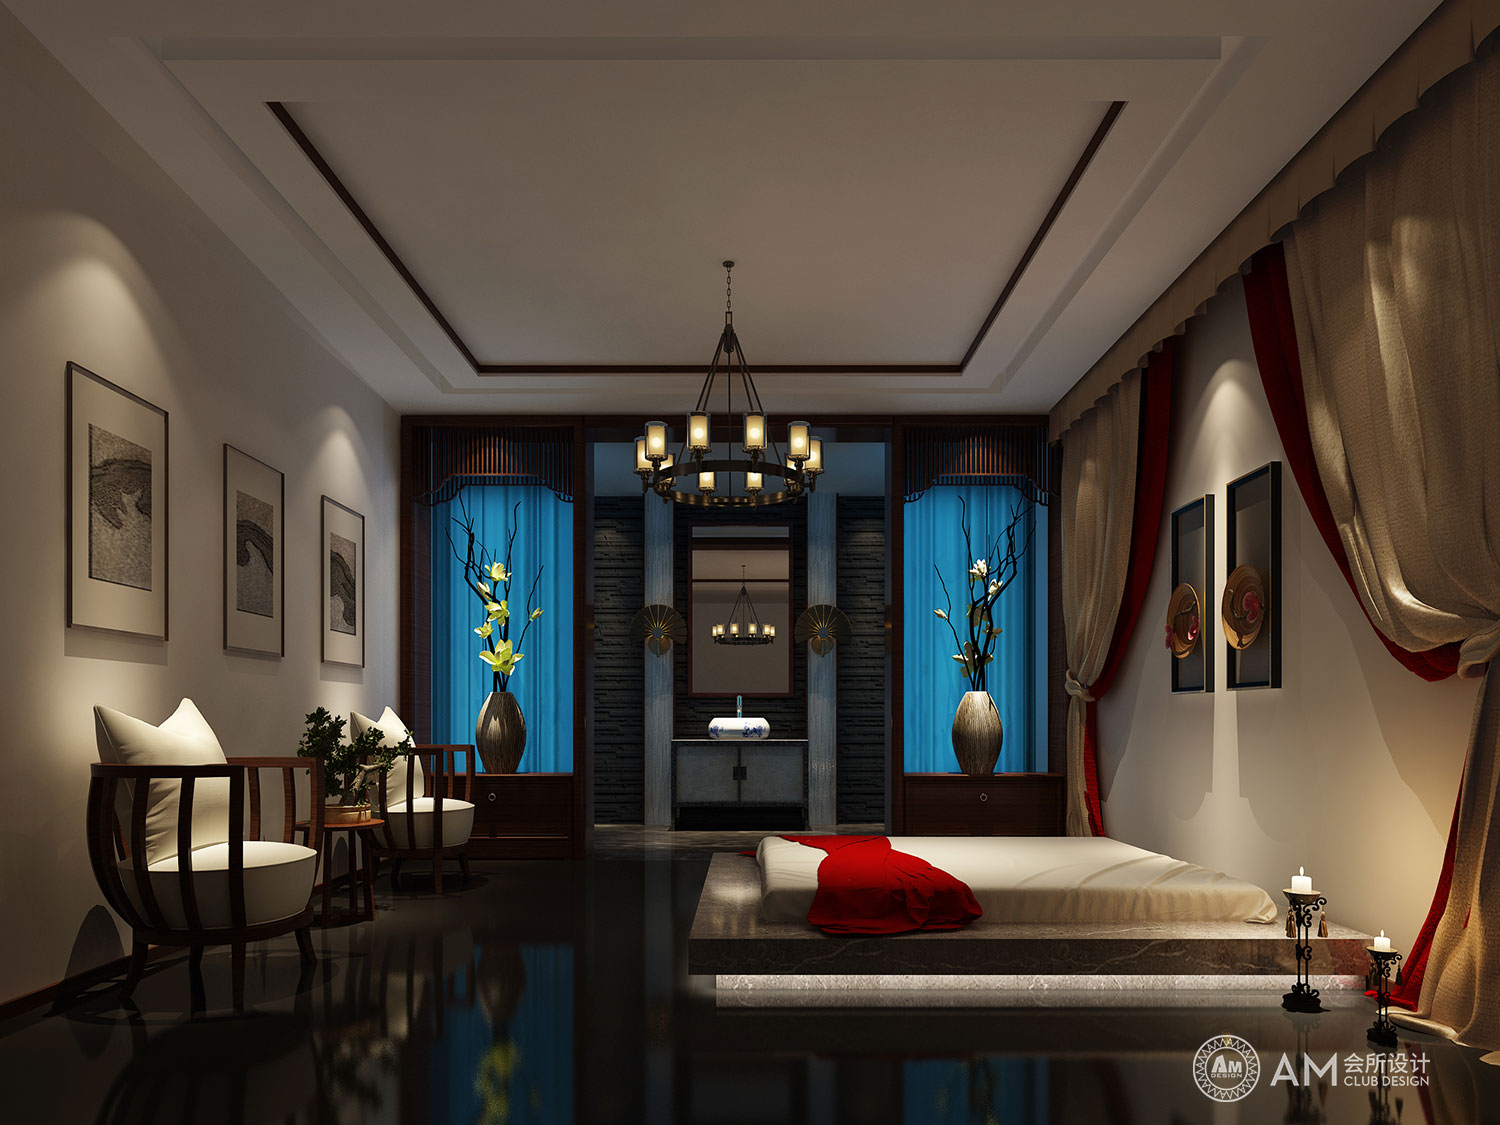 AM DESIGN | Spa room design of qilinhui Top Spa Club